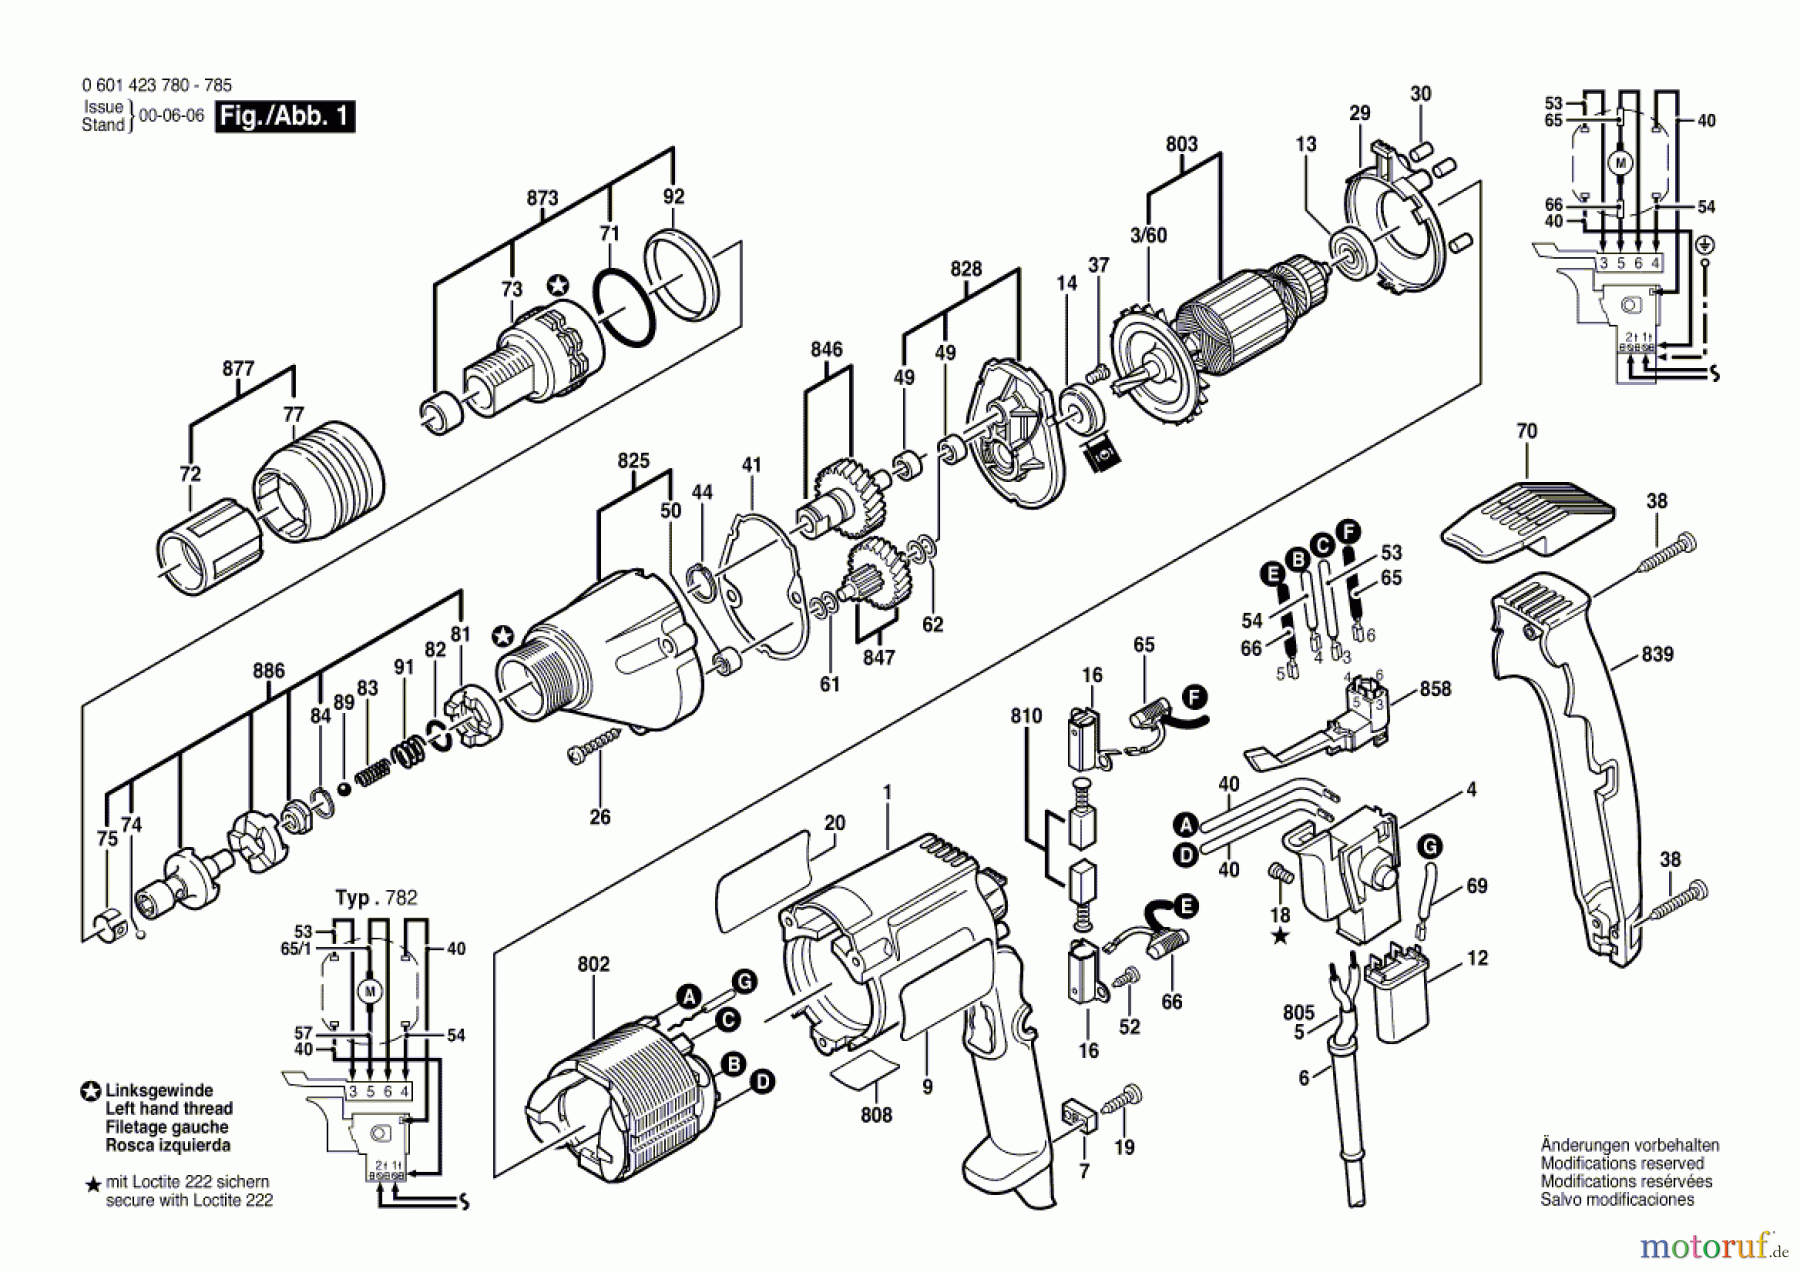  Bosch Werkzeug Bohrschrauber DI 600 Seite 1